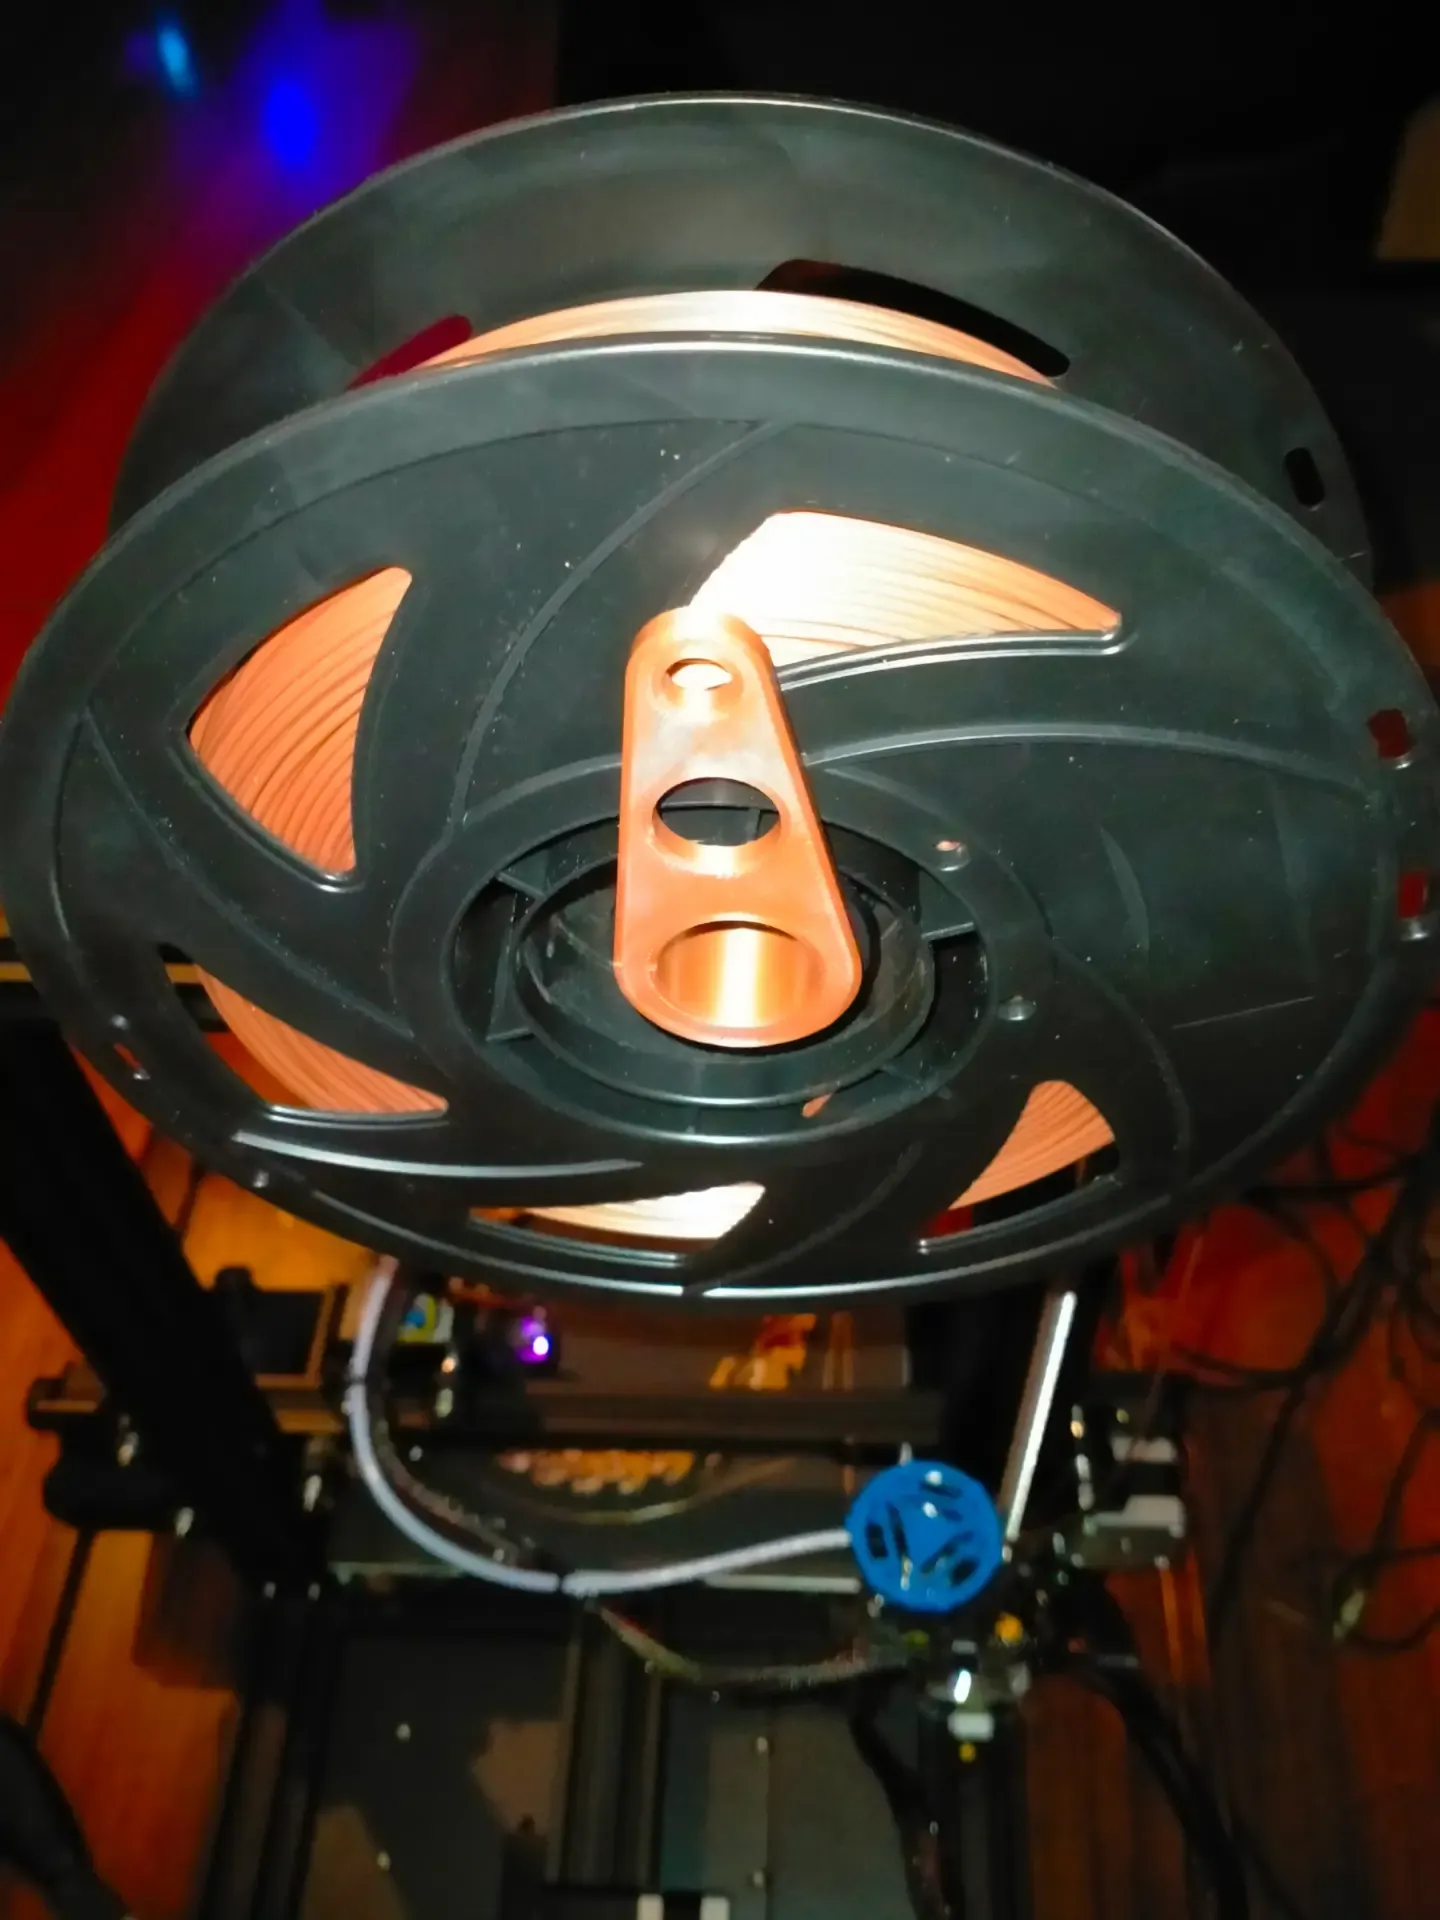 Spool holder end cap for Ender 3 V2 Neo